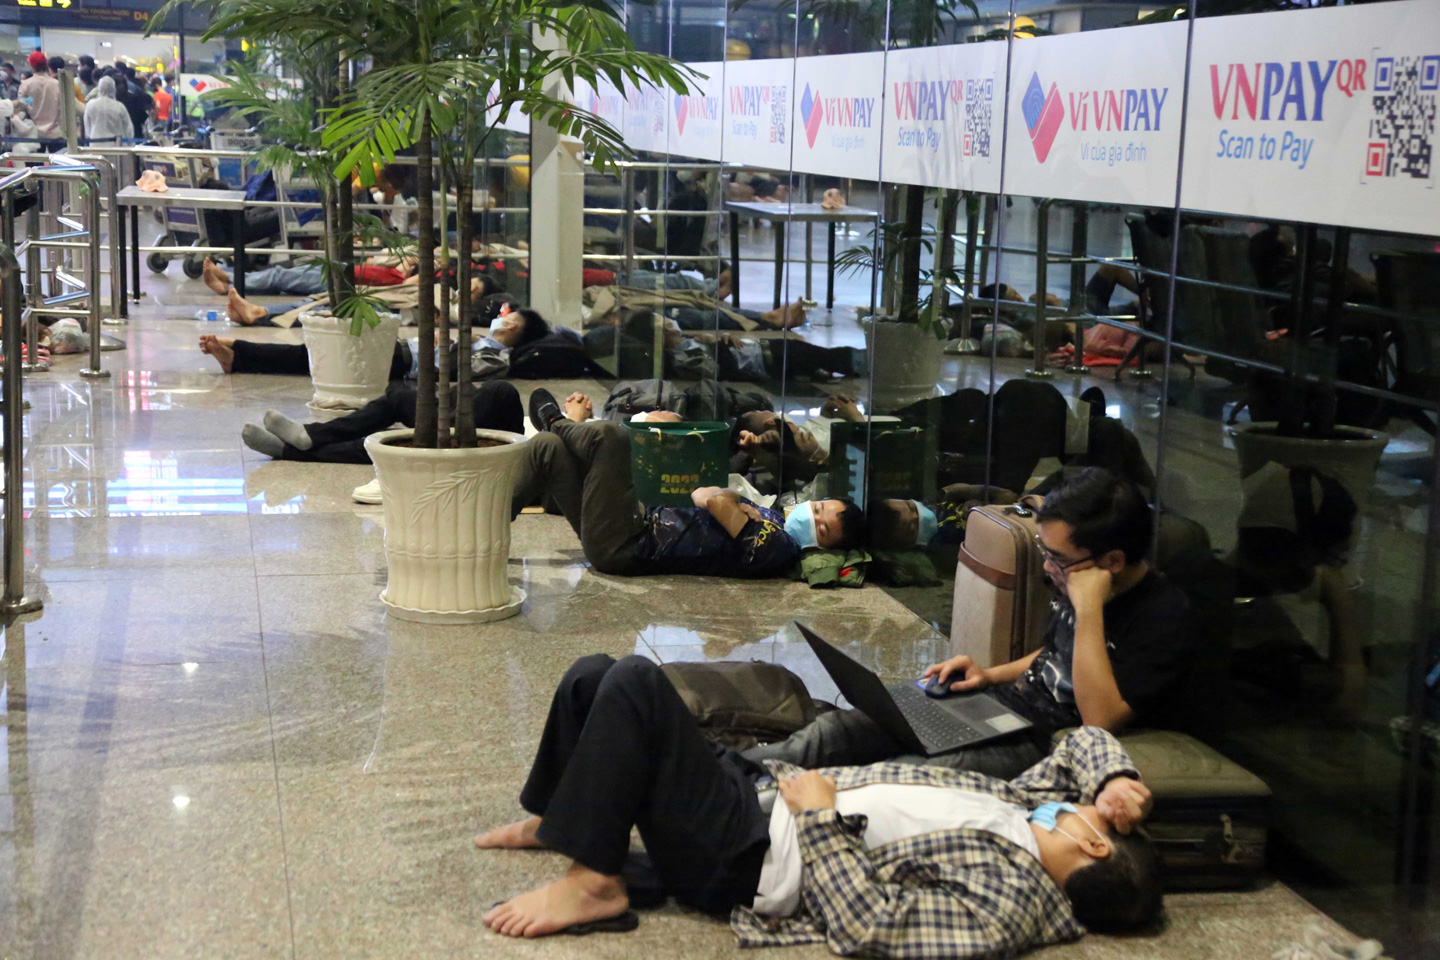 Ảnh: Sân bay Tân Sơn Nhất nghẹt người, khách nằm dài giữa nhà ga cả đêm chờ chuyến bay - 16